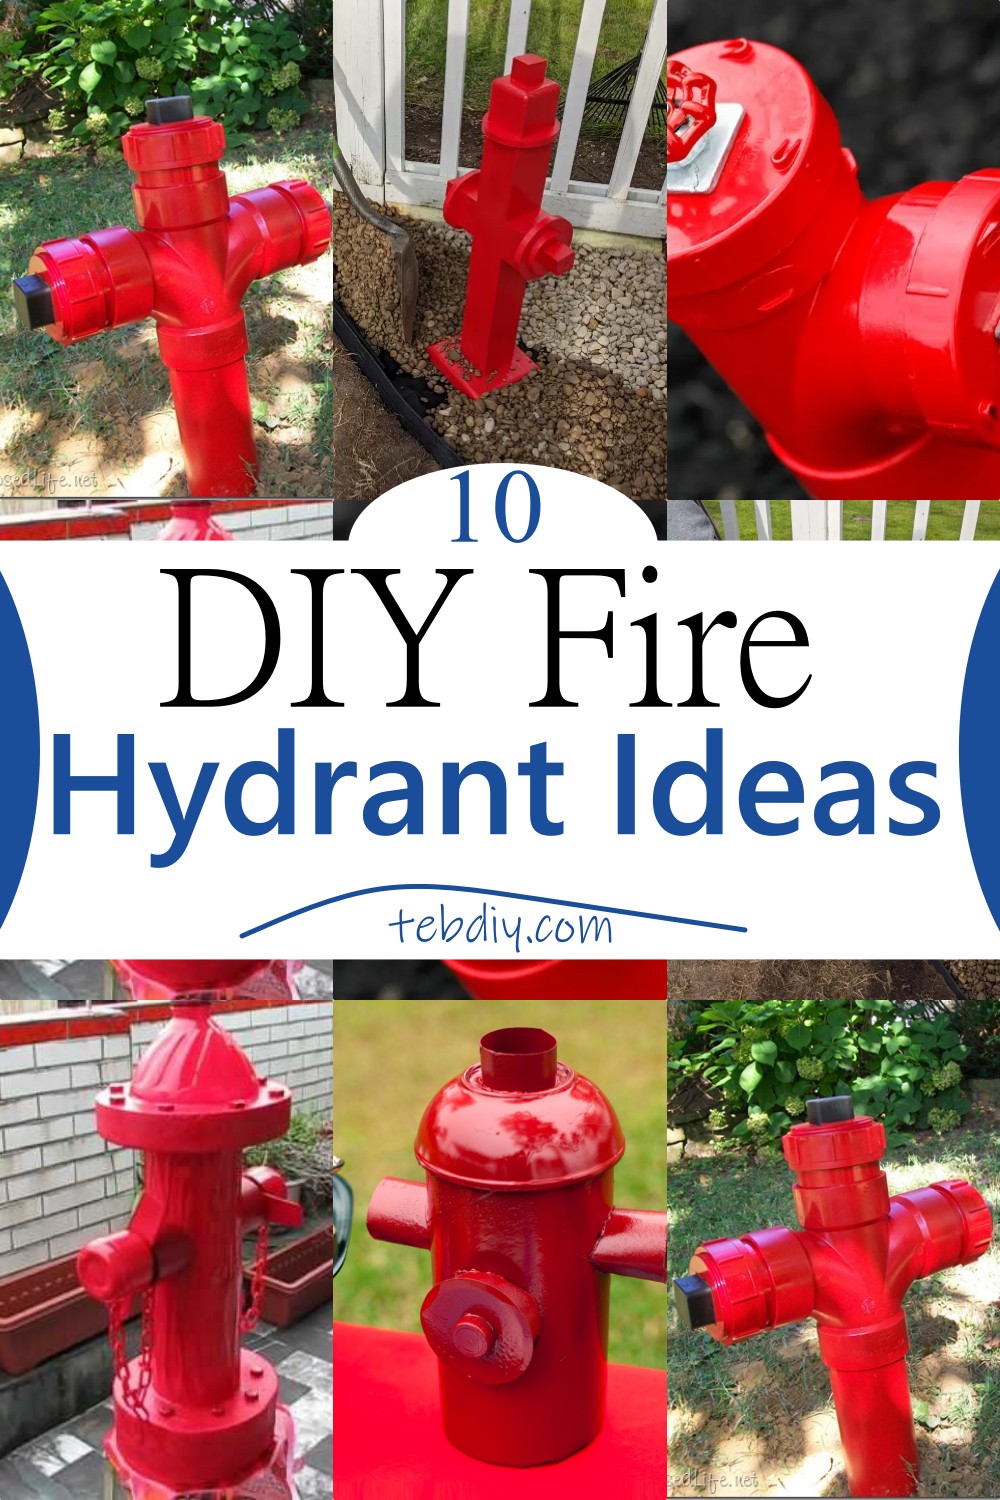 10 DIY Fire Hydrant Ideas